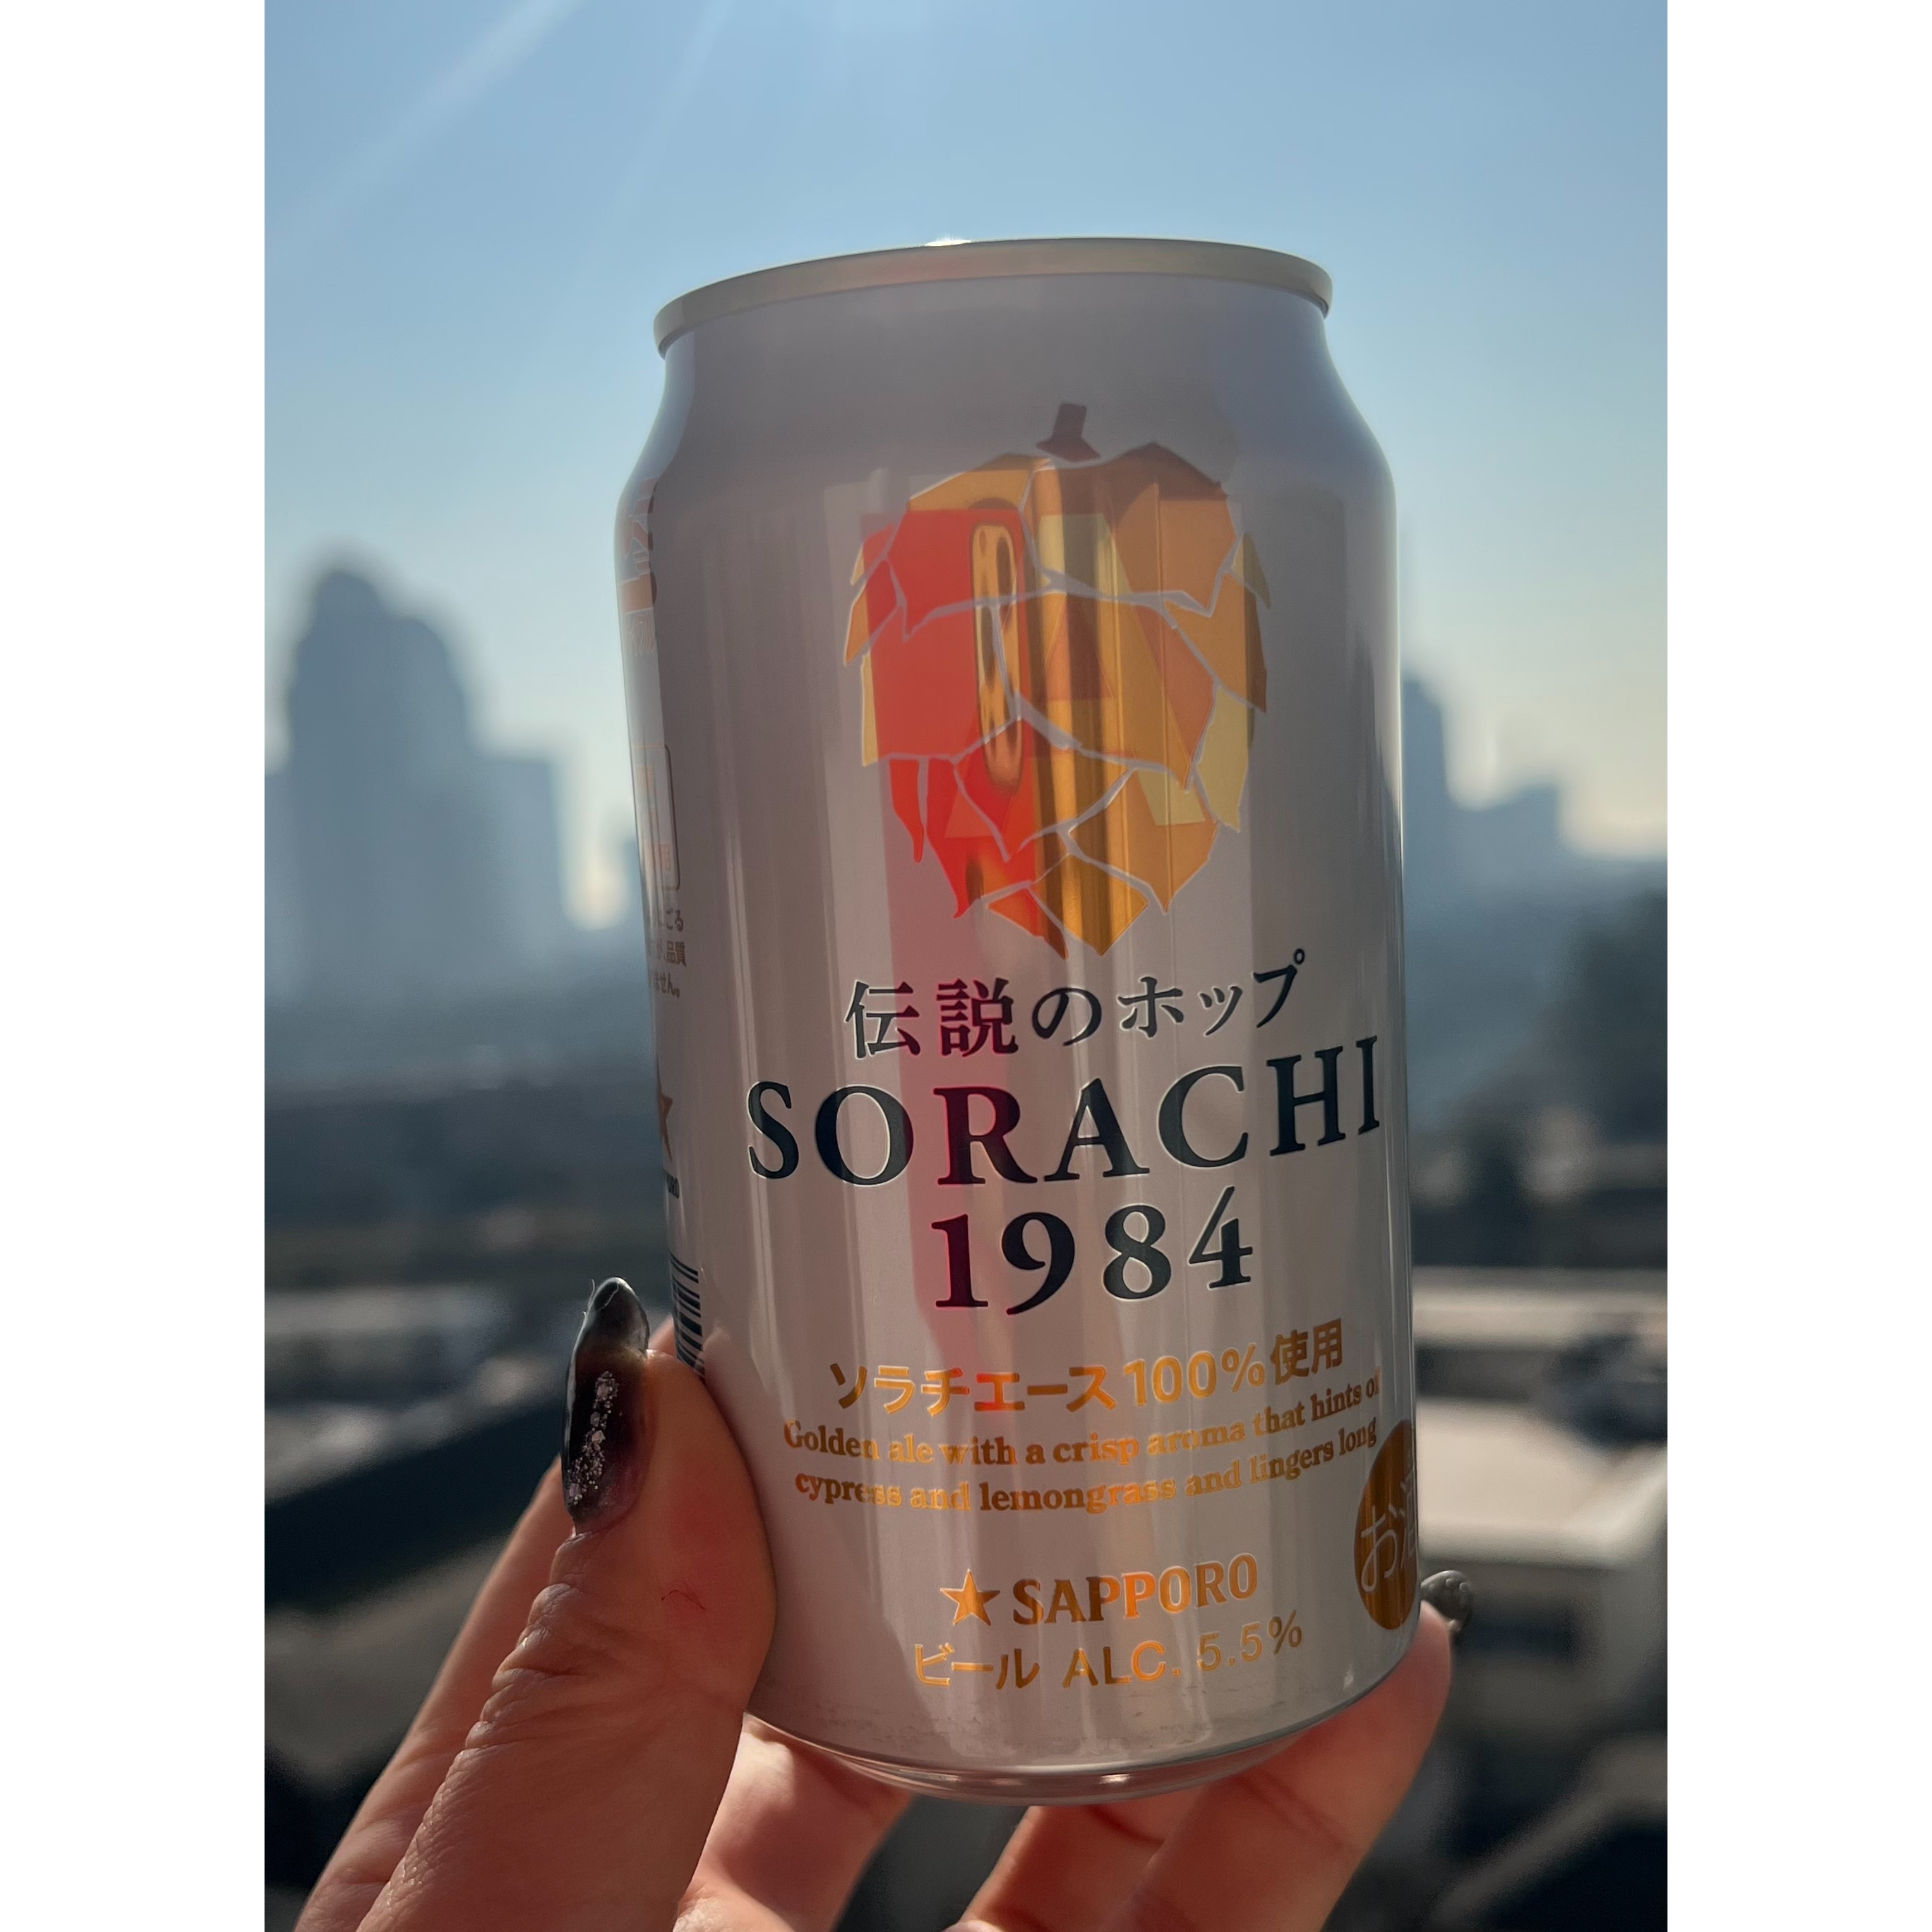 北海道勤務になった主人が「感動するくらいうまい！」と絶賛したビールが『SORACHI 1984』です。
ホップのお洒落なデザインの缶。透き通ったゴールド色のビール。
柑橘系っぽく爽やかで、大自然を感じるヒノキのような個性的な香り。
苦味もあって、コクも感じる、高級感のあるビール。
贅沢な気持ちにしてくれるビールなので、見かけたら是非飲んでみてほしいです！